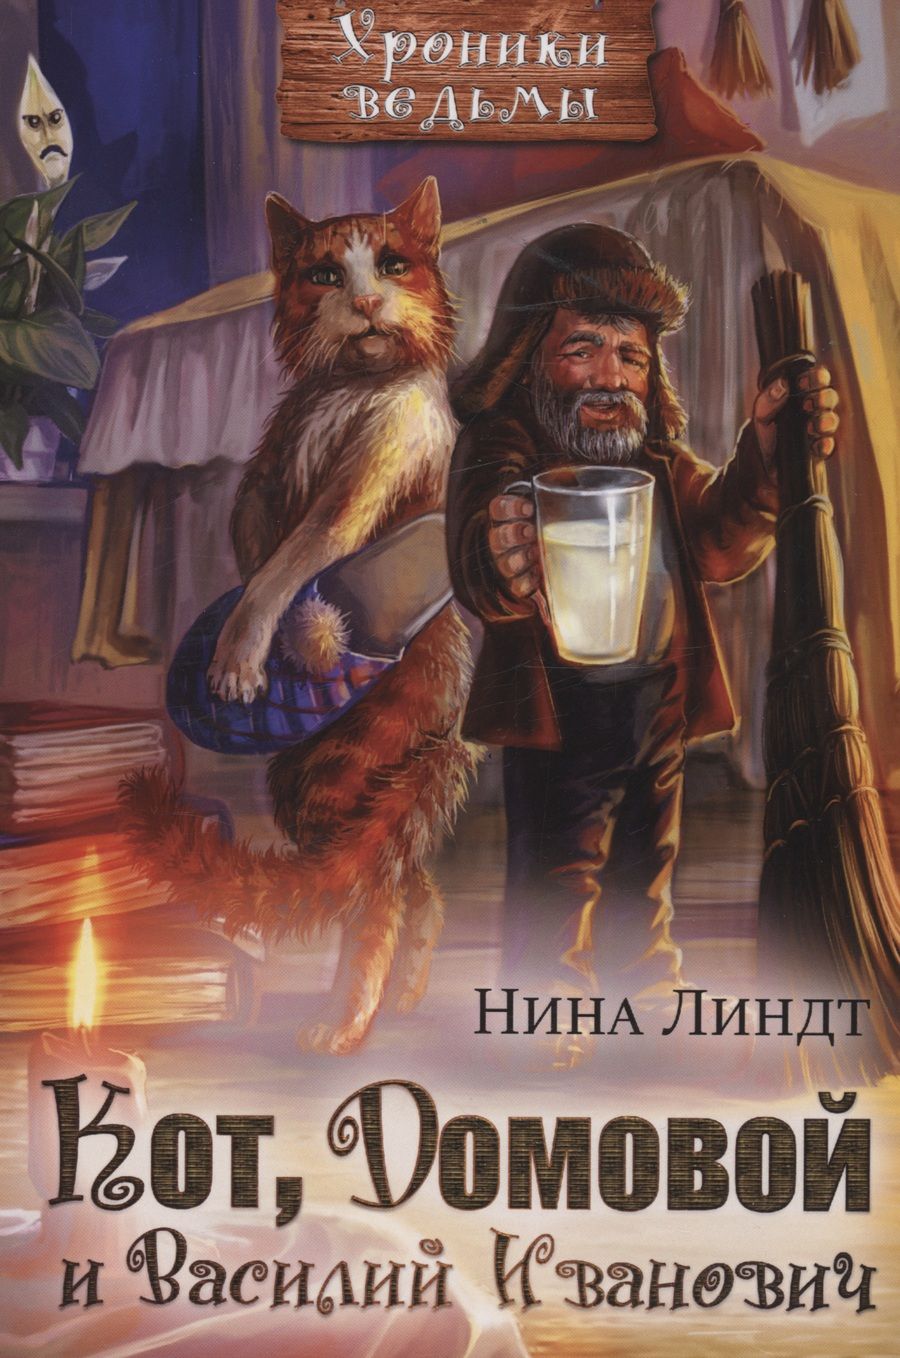 Обложка книги "Линдт: Кот, Домовой и Василий Иванович"